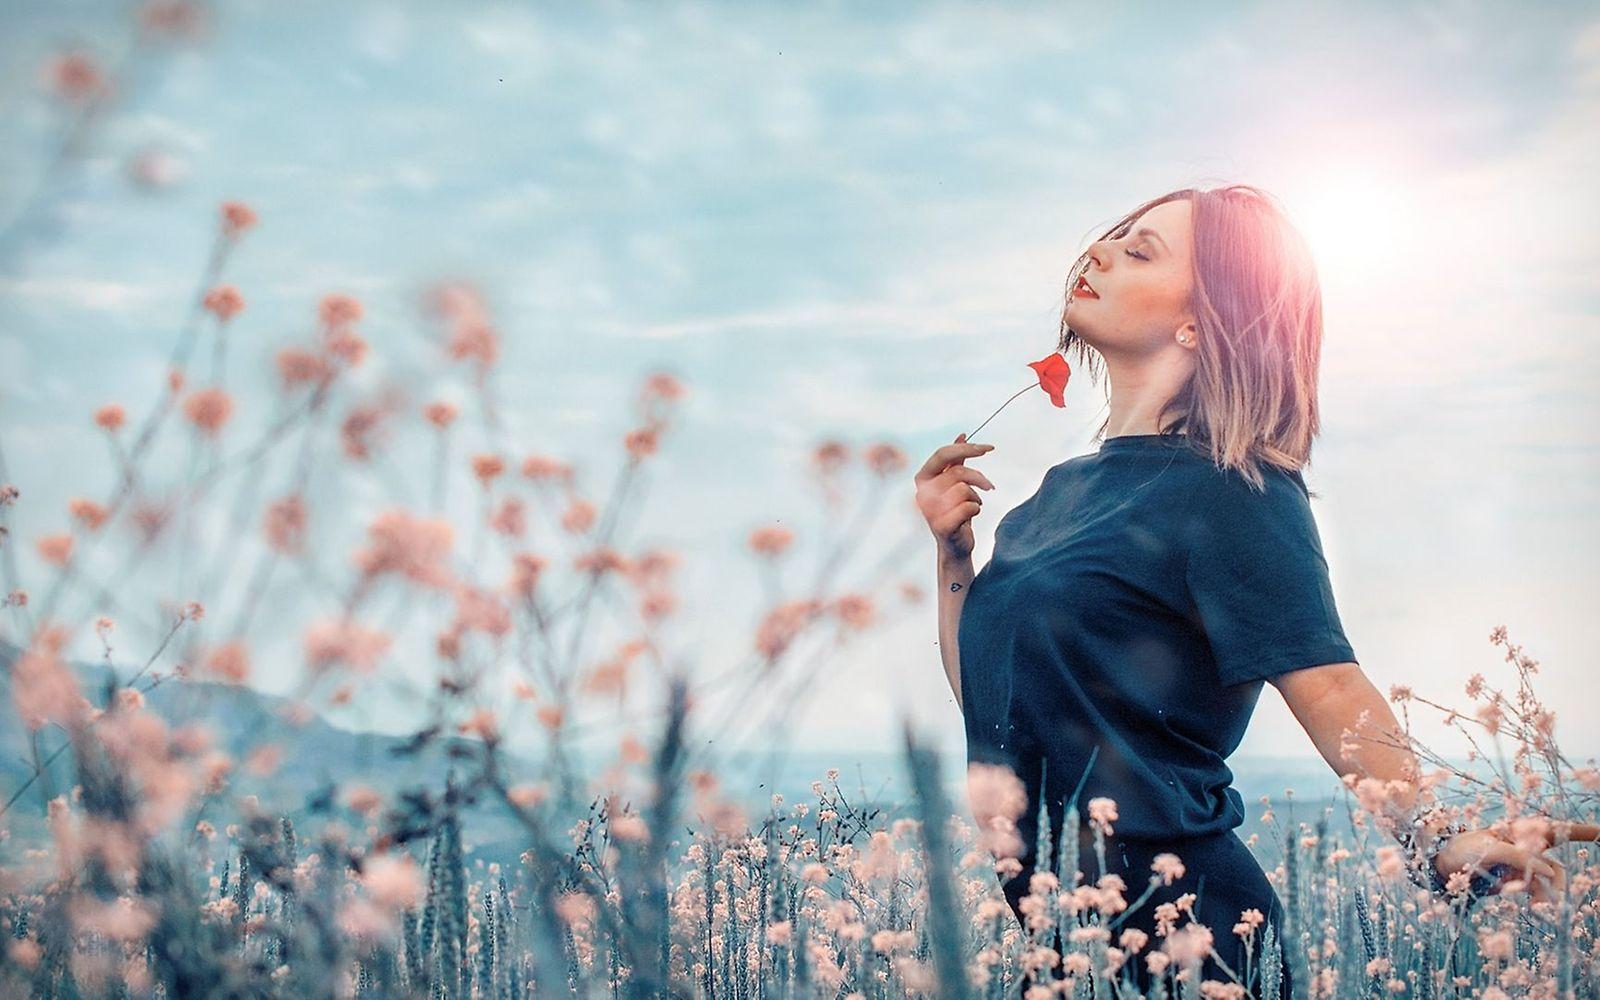 Sinnlichkeit: Eine Frau riecht an Blumen und genießt das Leben.